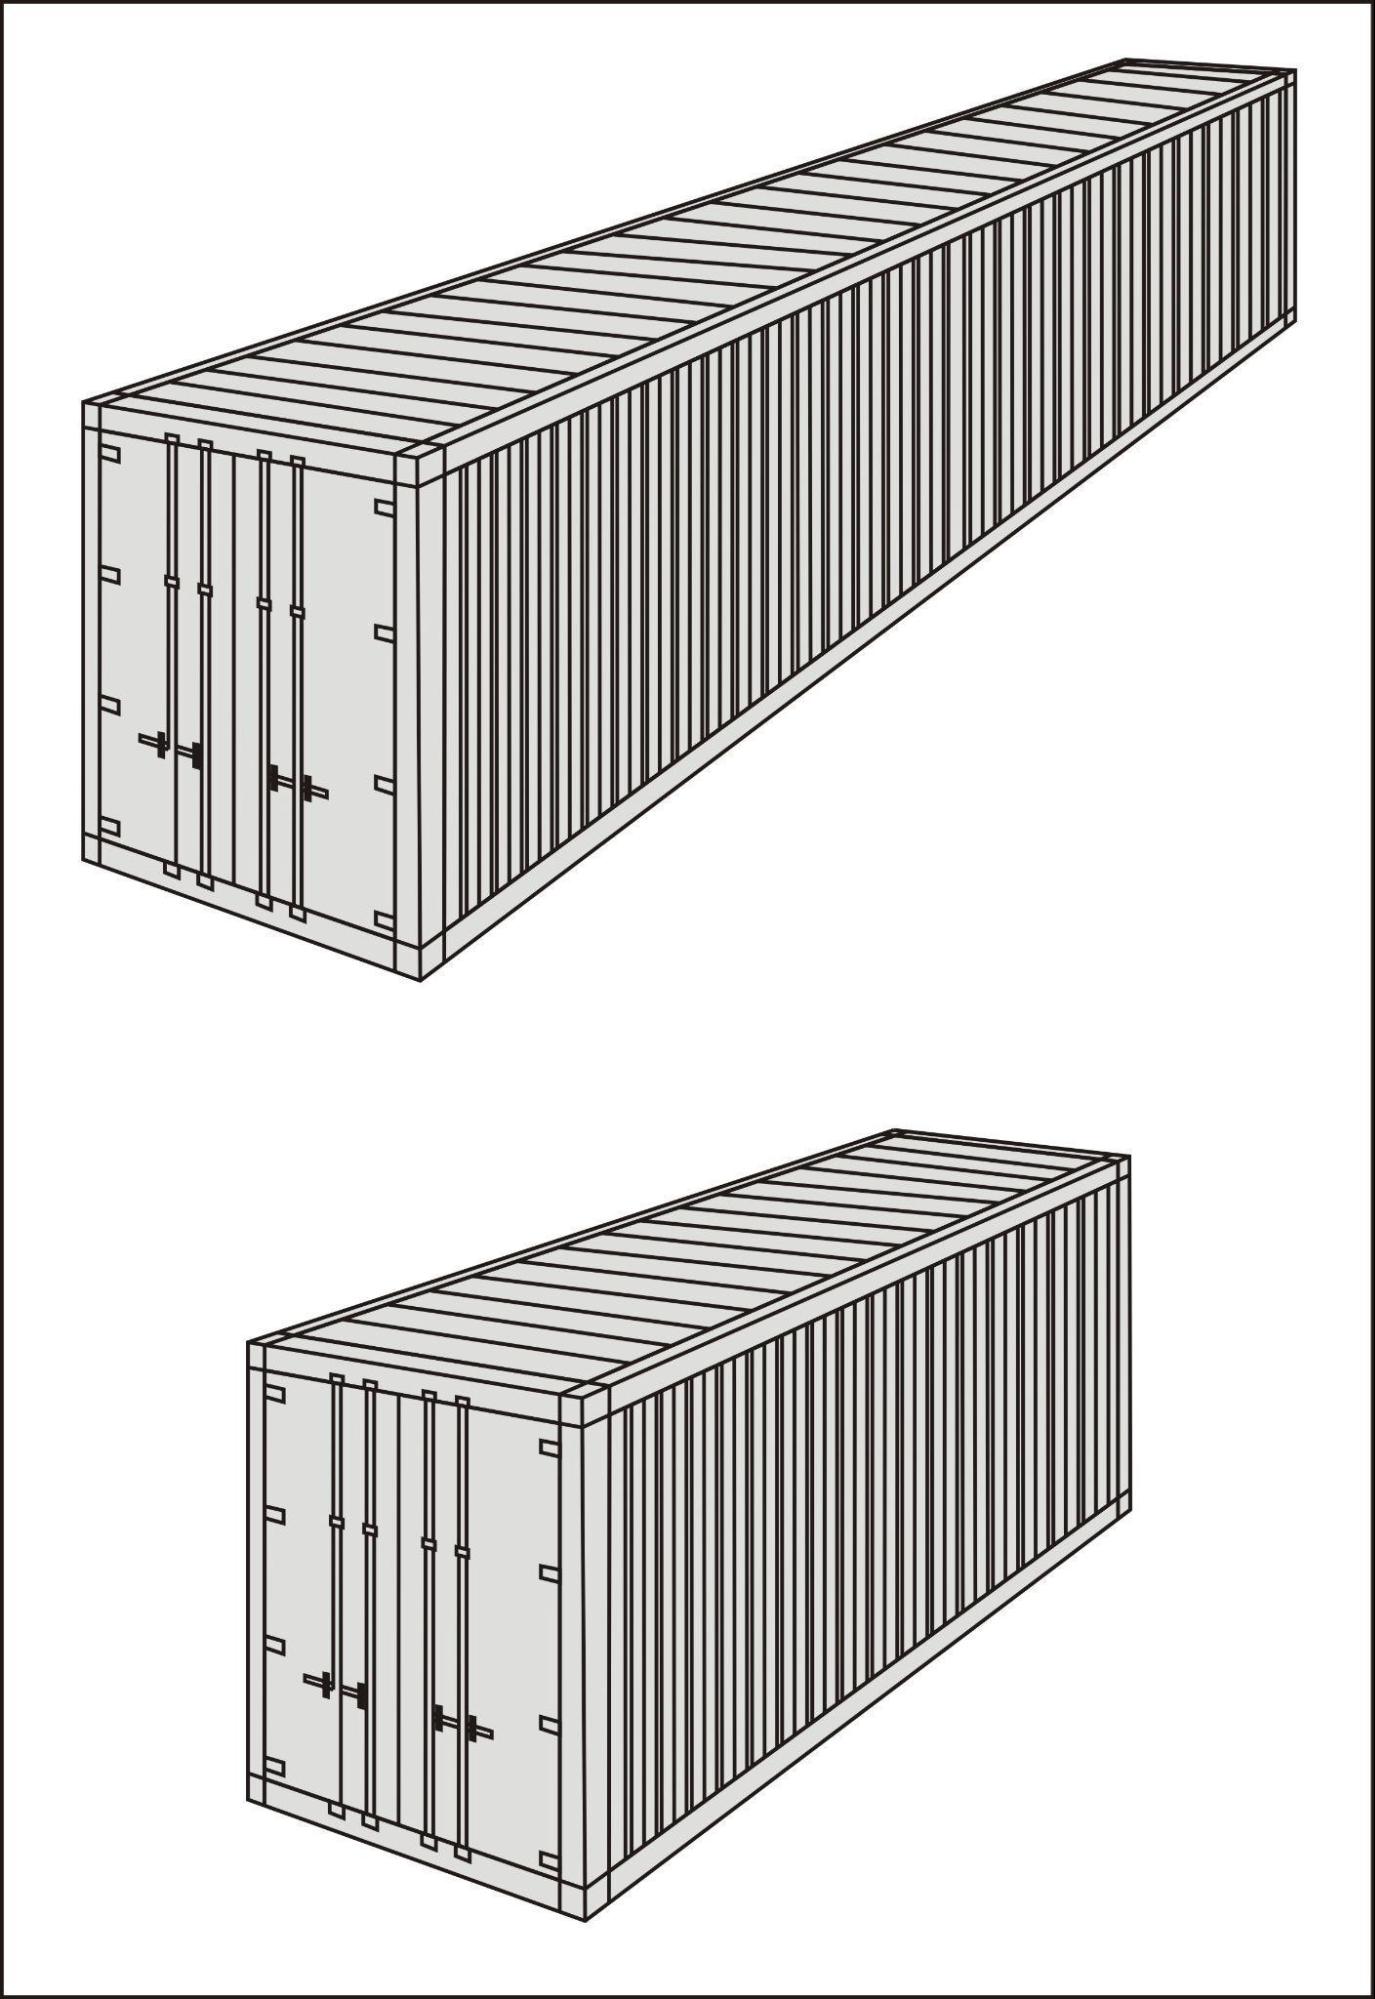 Esempi di Container Standard